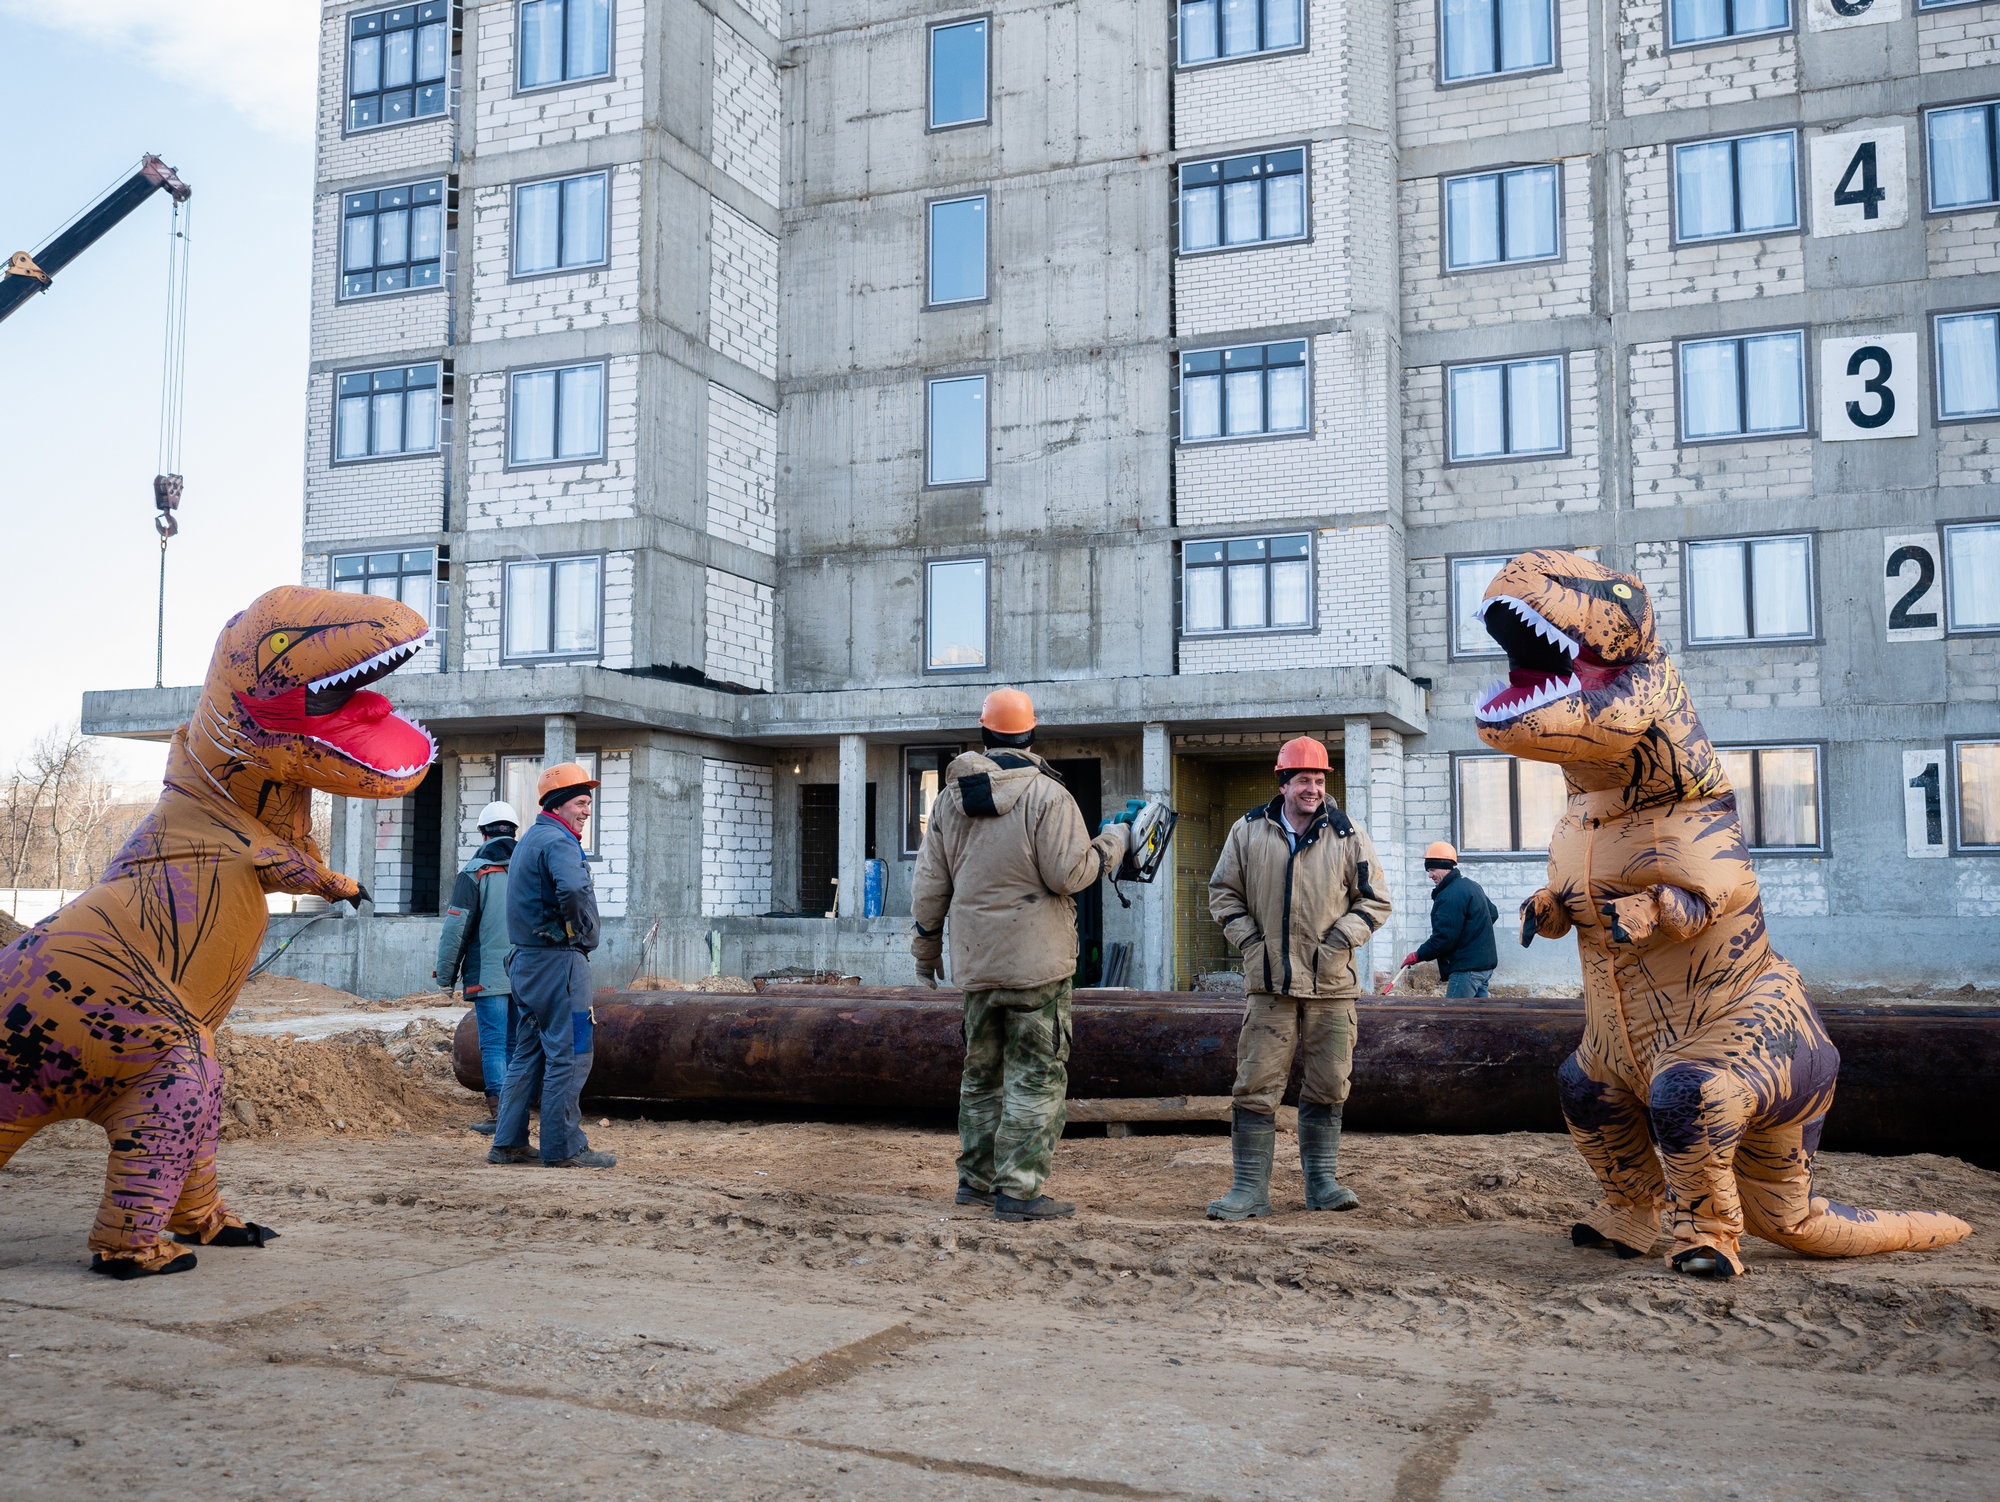 Работают даже тираннозавры: в Нижнем Новгороде застройщик устроил необычную фотосессию